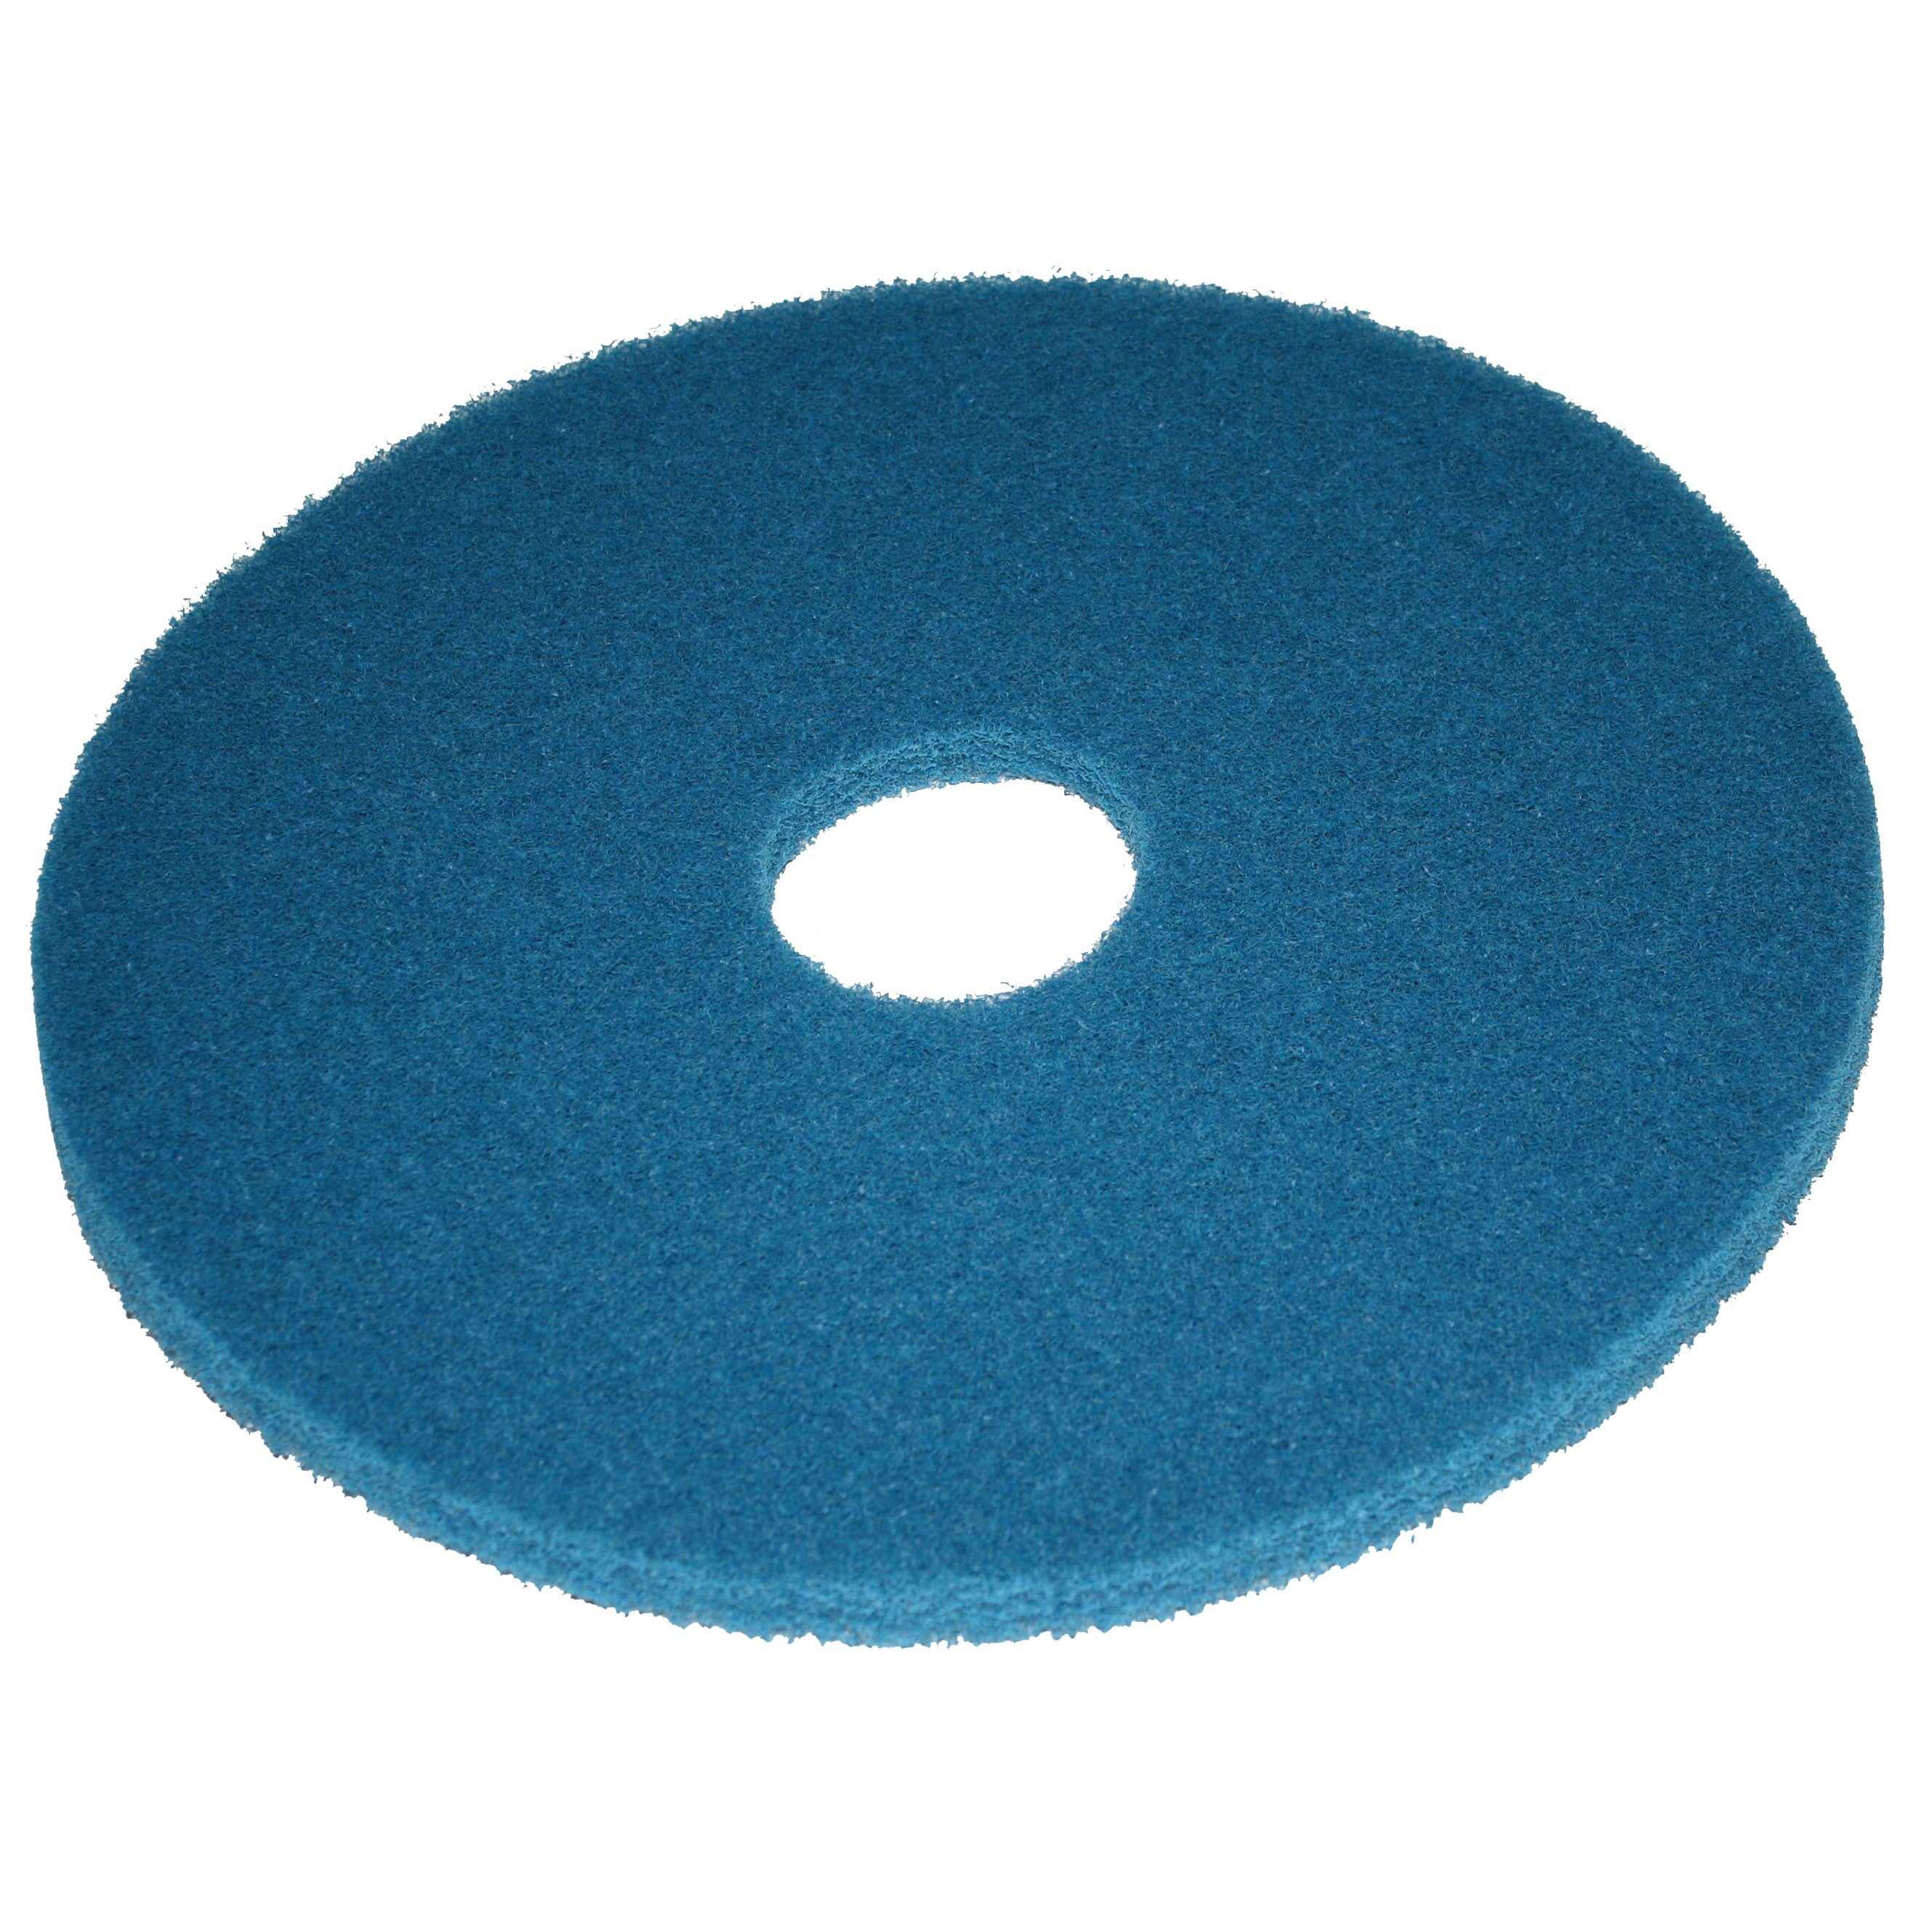 Pad bleu, Ø 355 mm, polyester